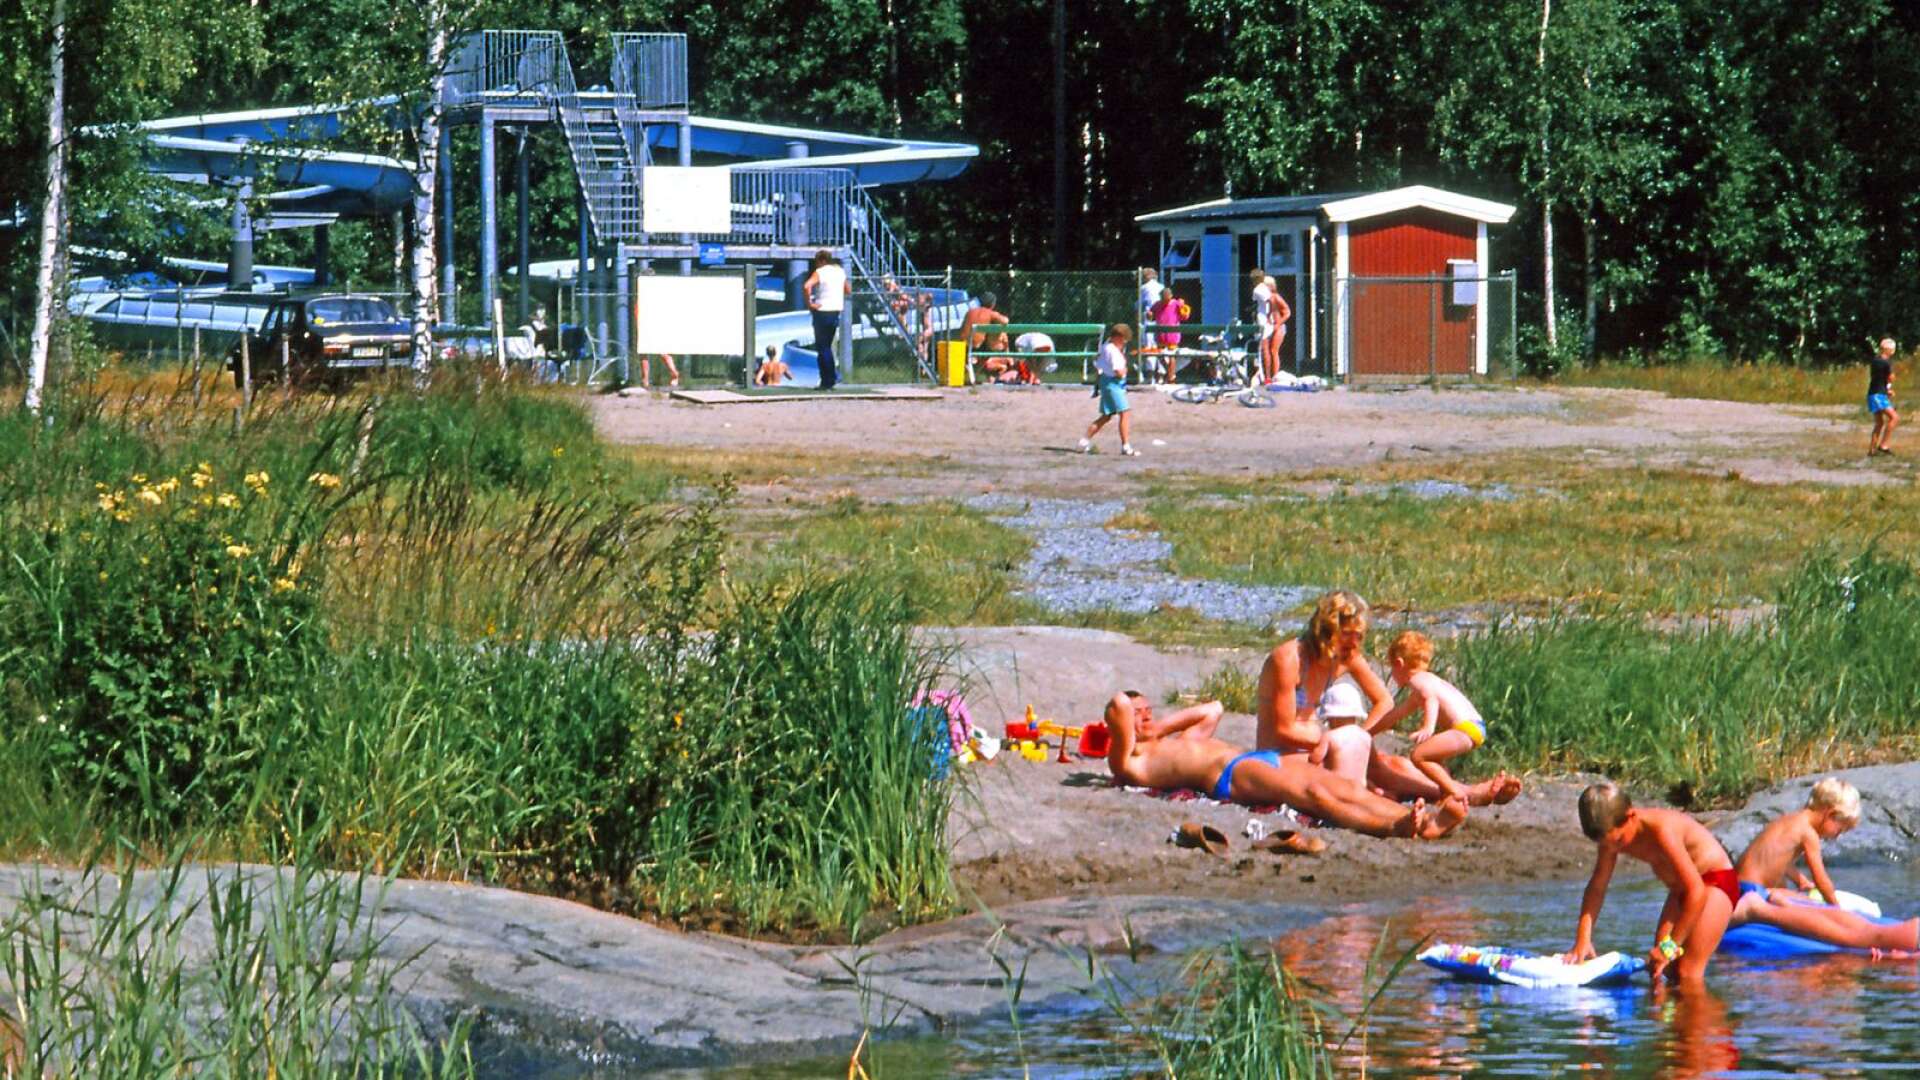 En åktur i Duses vattenrutschbana slutade med ett bad i den pool som hörde till anläggningen. De som var barn på 1980-talet har säkert minnen av detta.